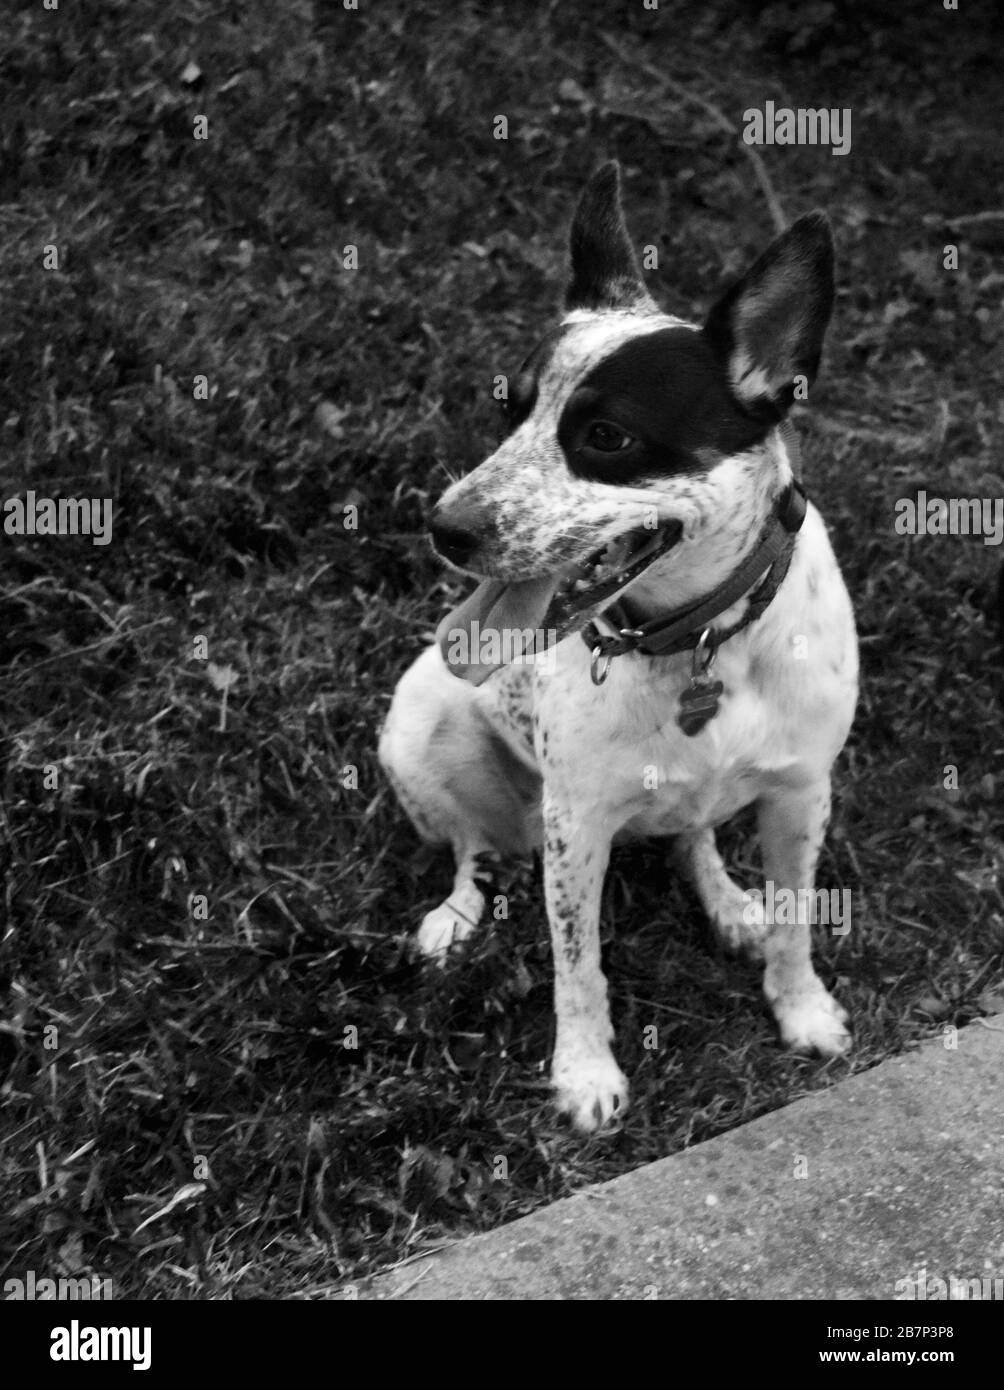 Cane bianco e nero seduto, foto in bianco e nero Foto Stock